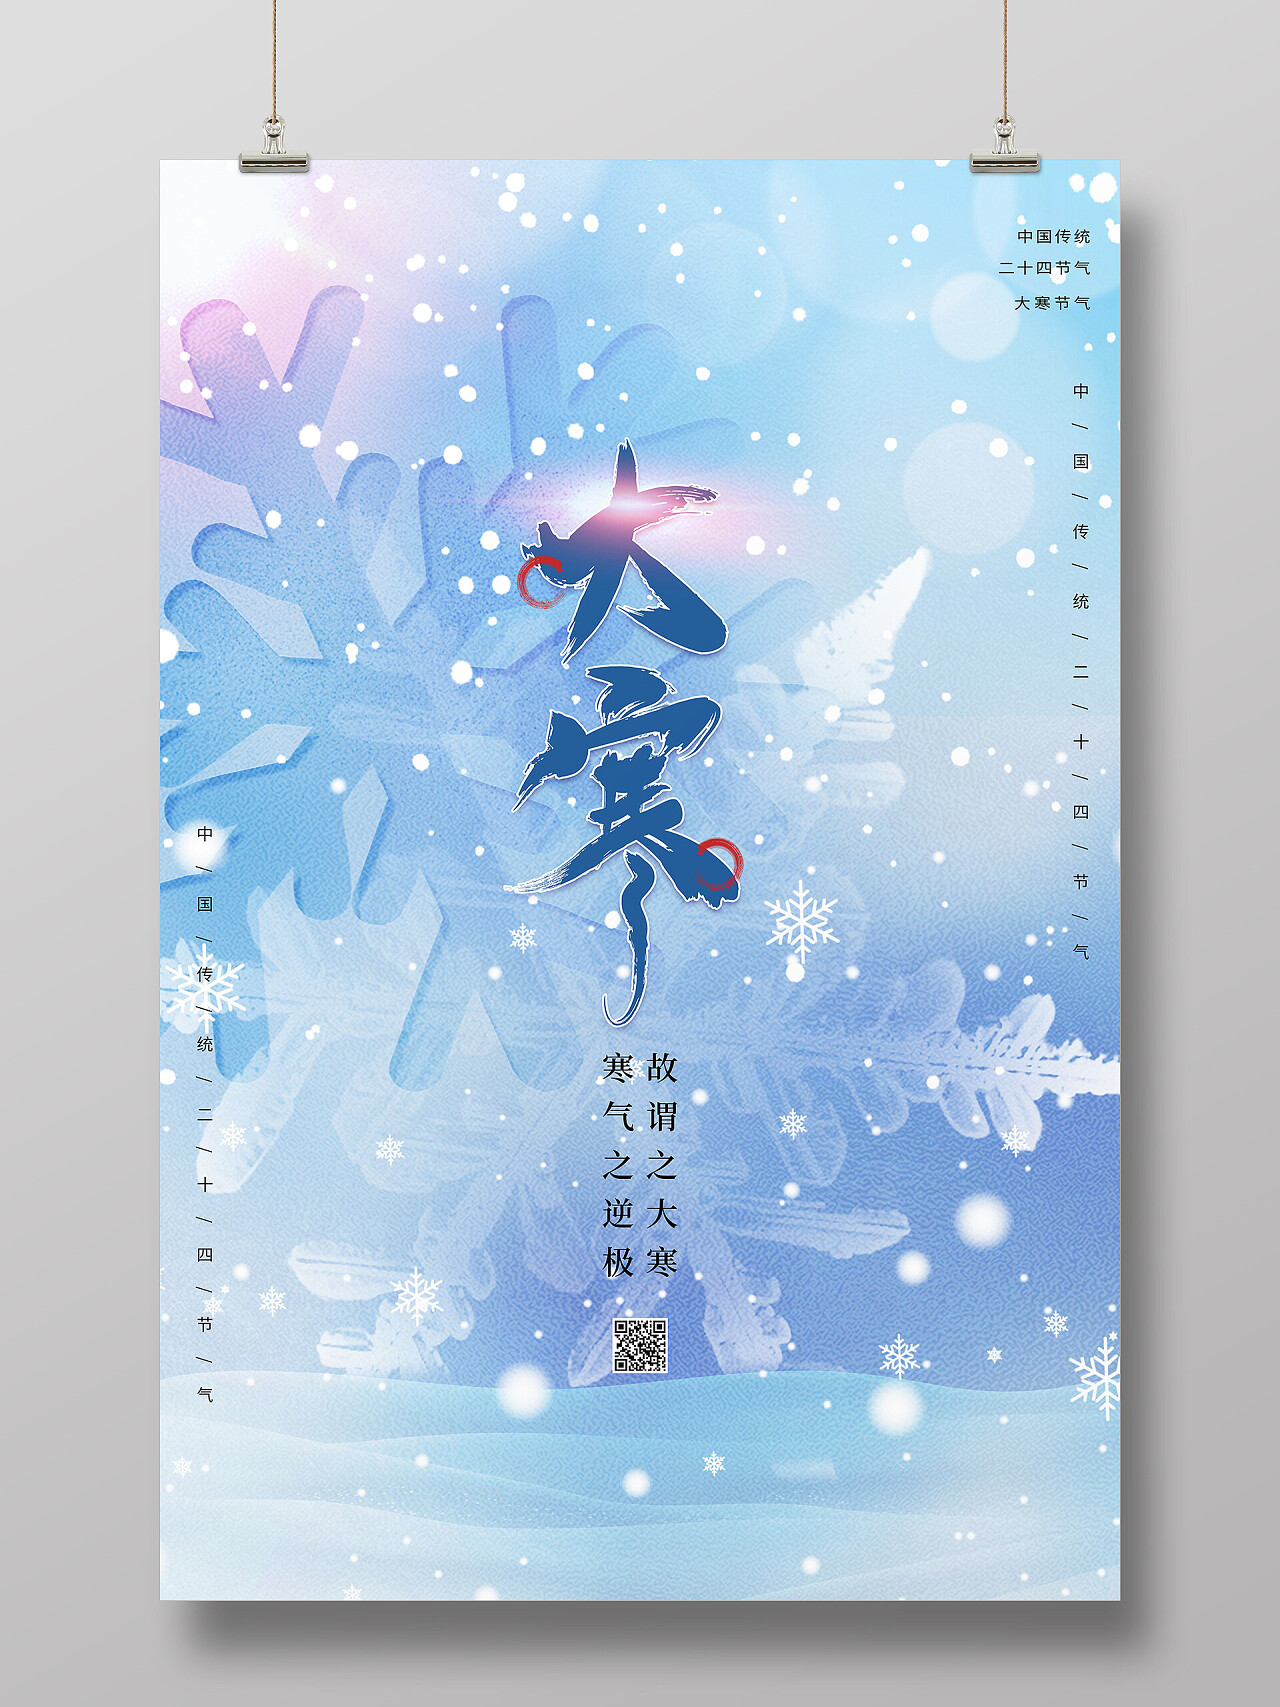 蓝色简约中国传统节日二十四节气大寒海报节日